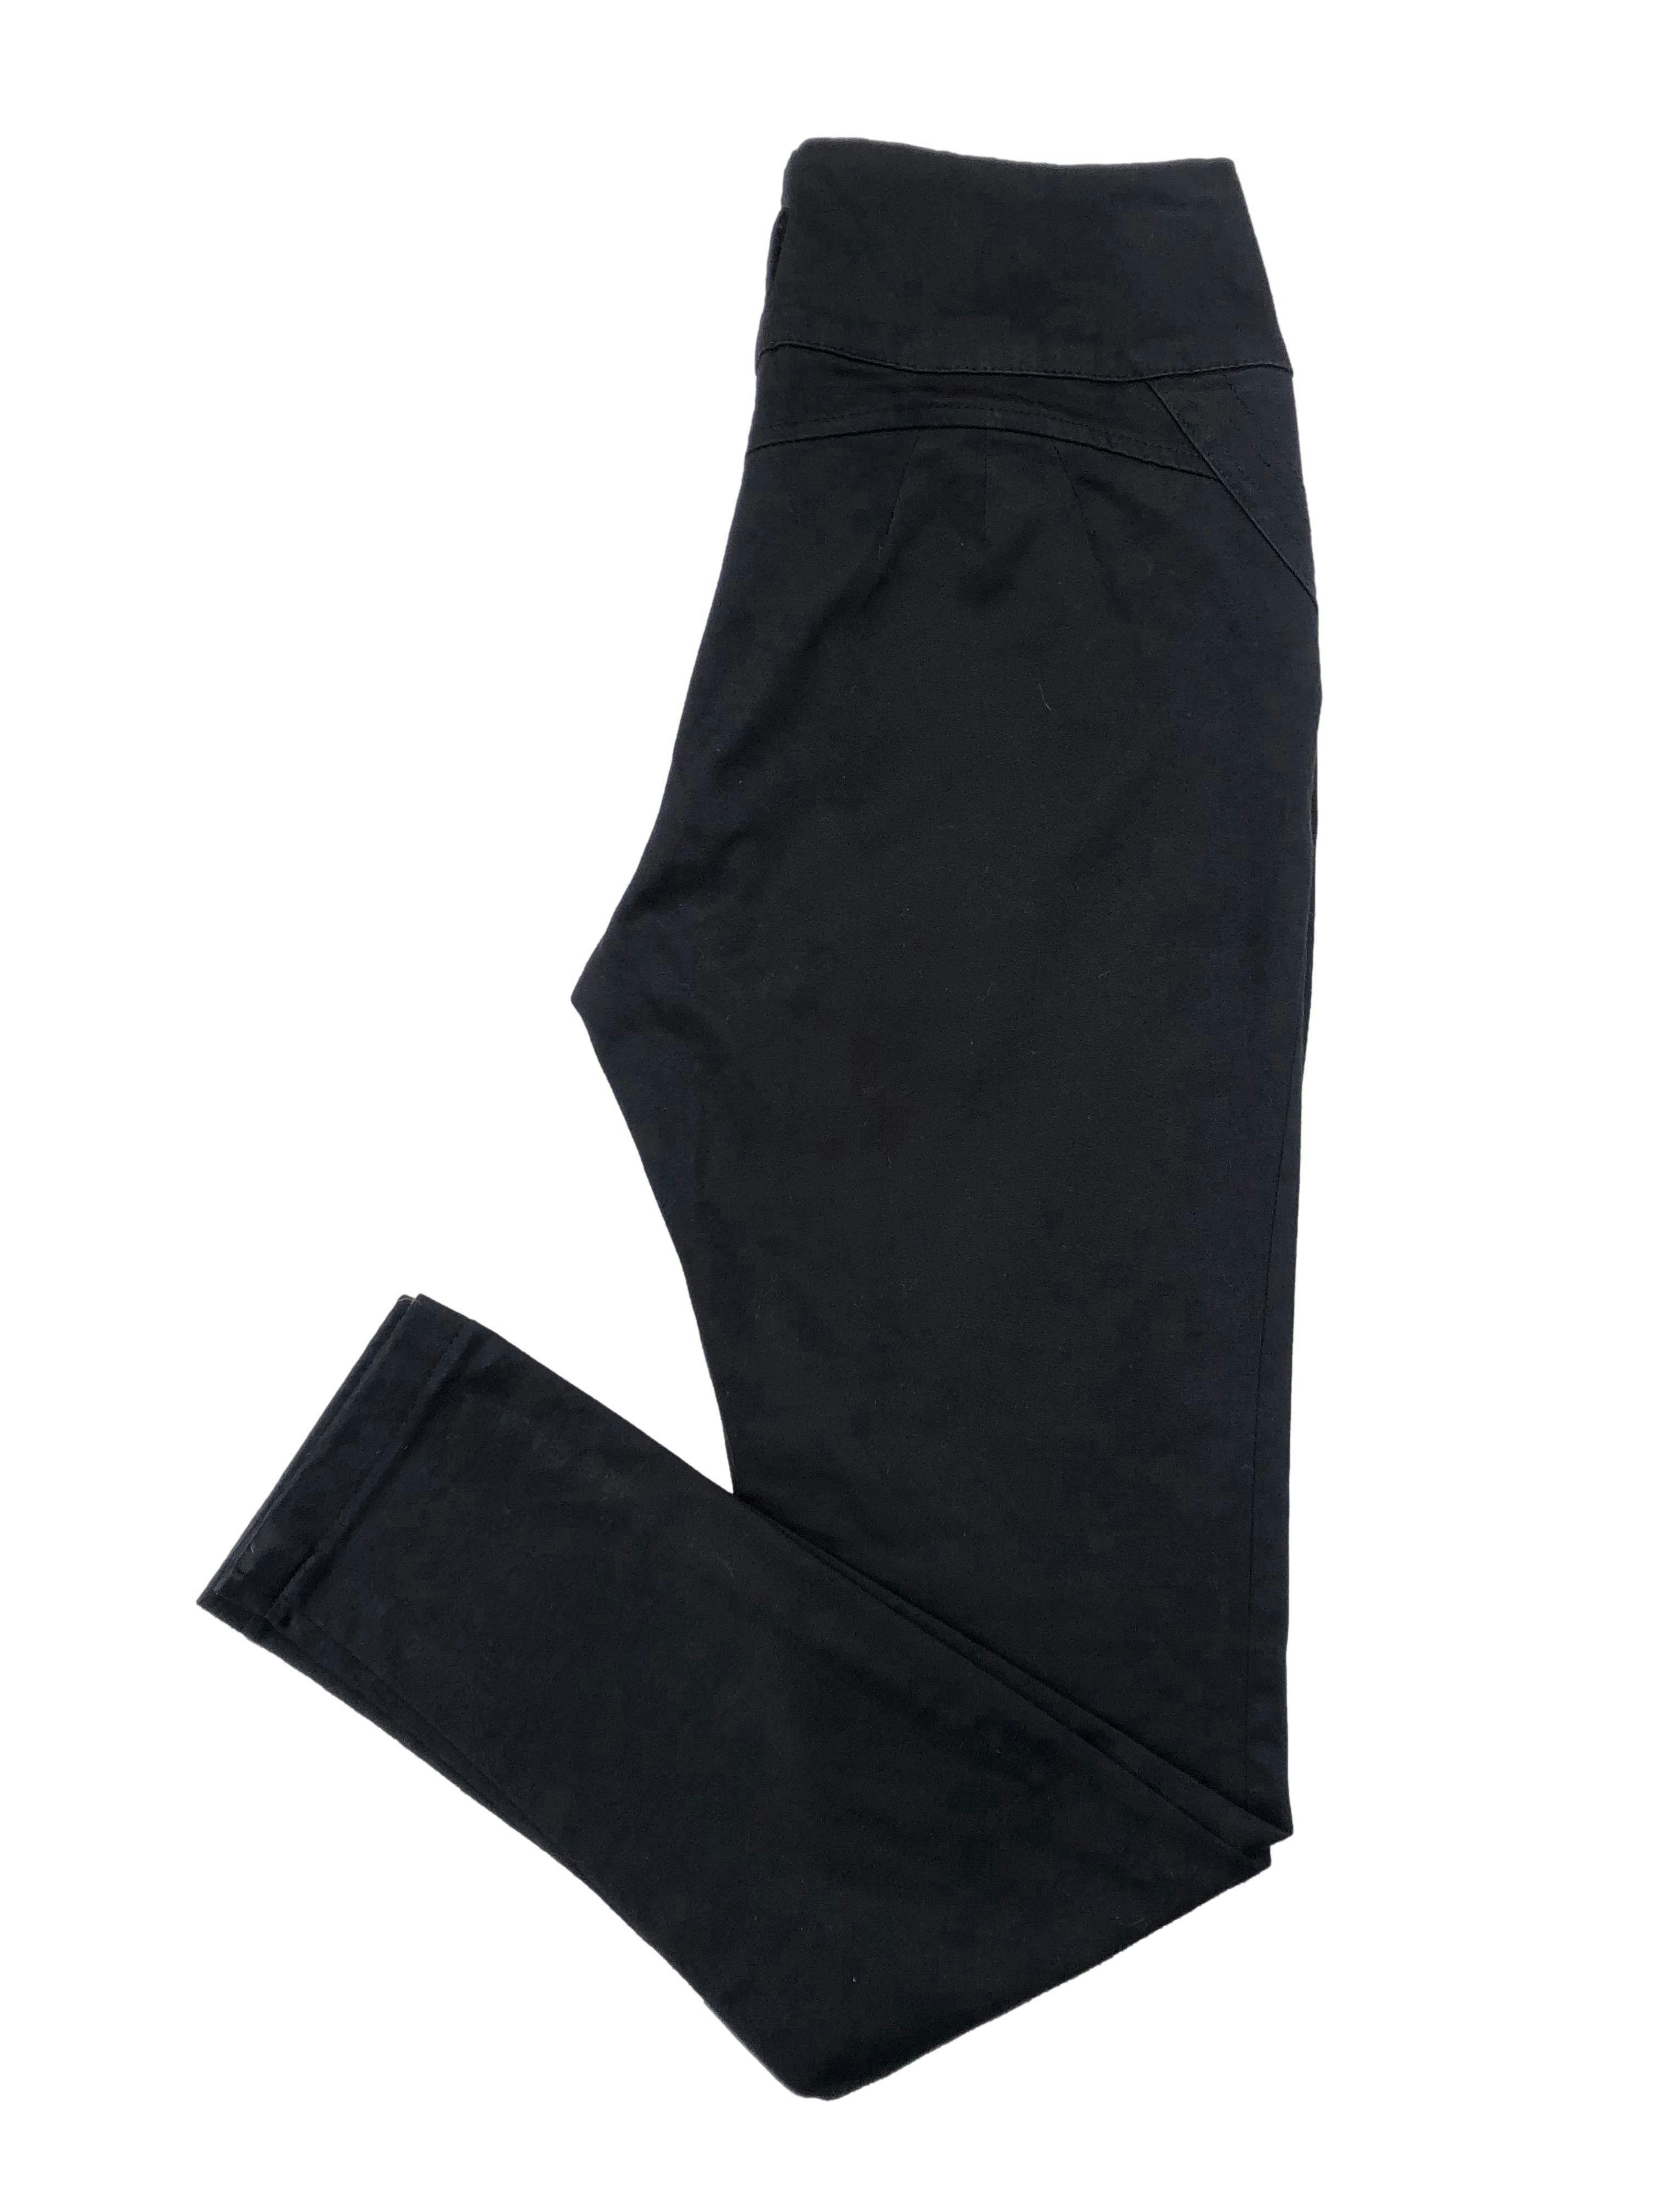 Pantalón negro con bolsillos en la parte delantera y botones. Cintura: 72cm, Tiro: 23cm, Largo: 90cm